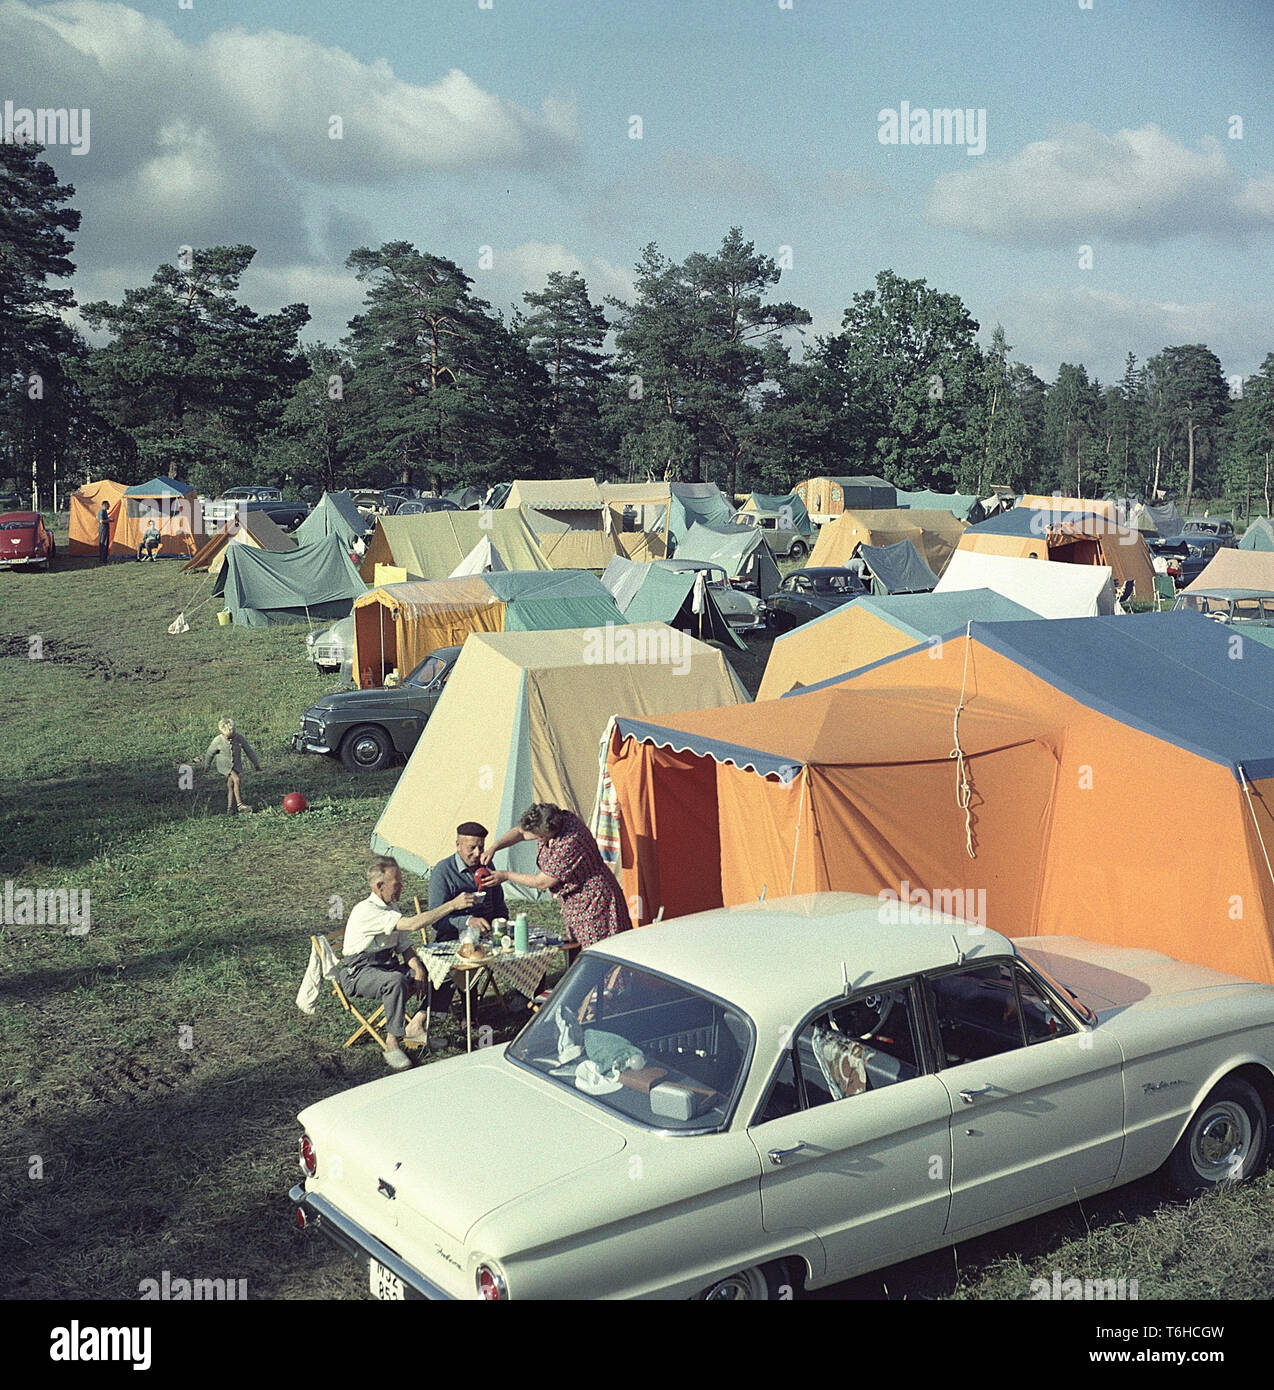 Camping dans les années 50. Un terrain de camping où les gens passent une partie de leurs vacances d'été. Les jardins sont pleins de tentes de différentes tailles. À côté de la leurs tentes les voitures sont garées. Devant un groupe de trois personnes ayant une tasse de café assis dans le pliage de type chaises de camping et une table. Suède 1958 Banque D'Images